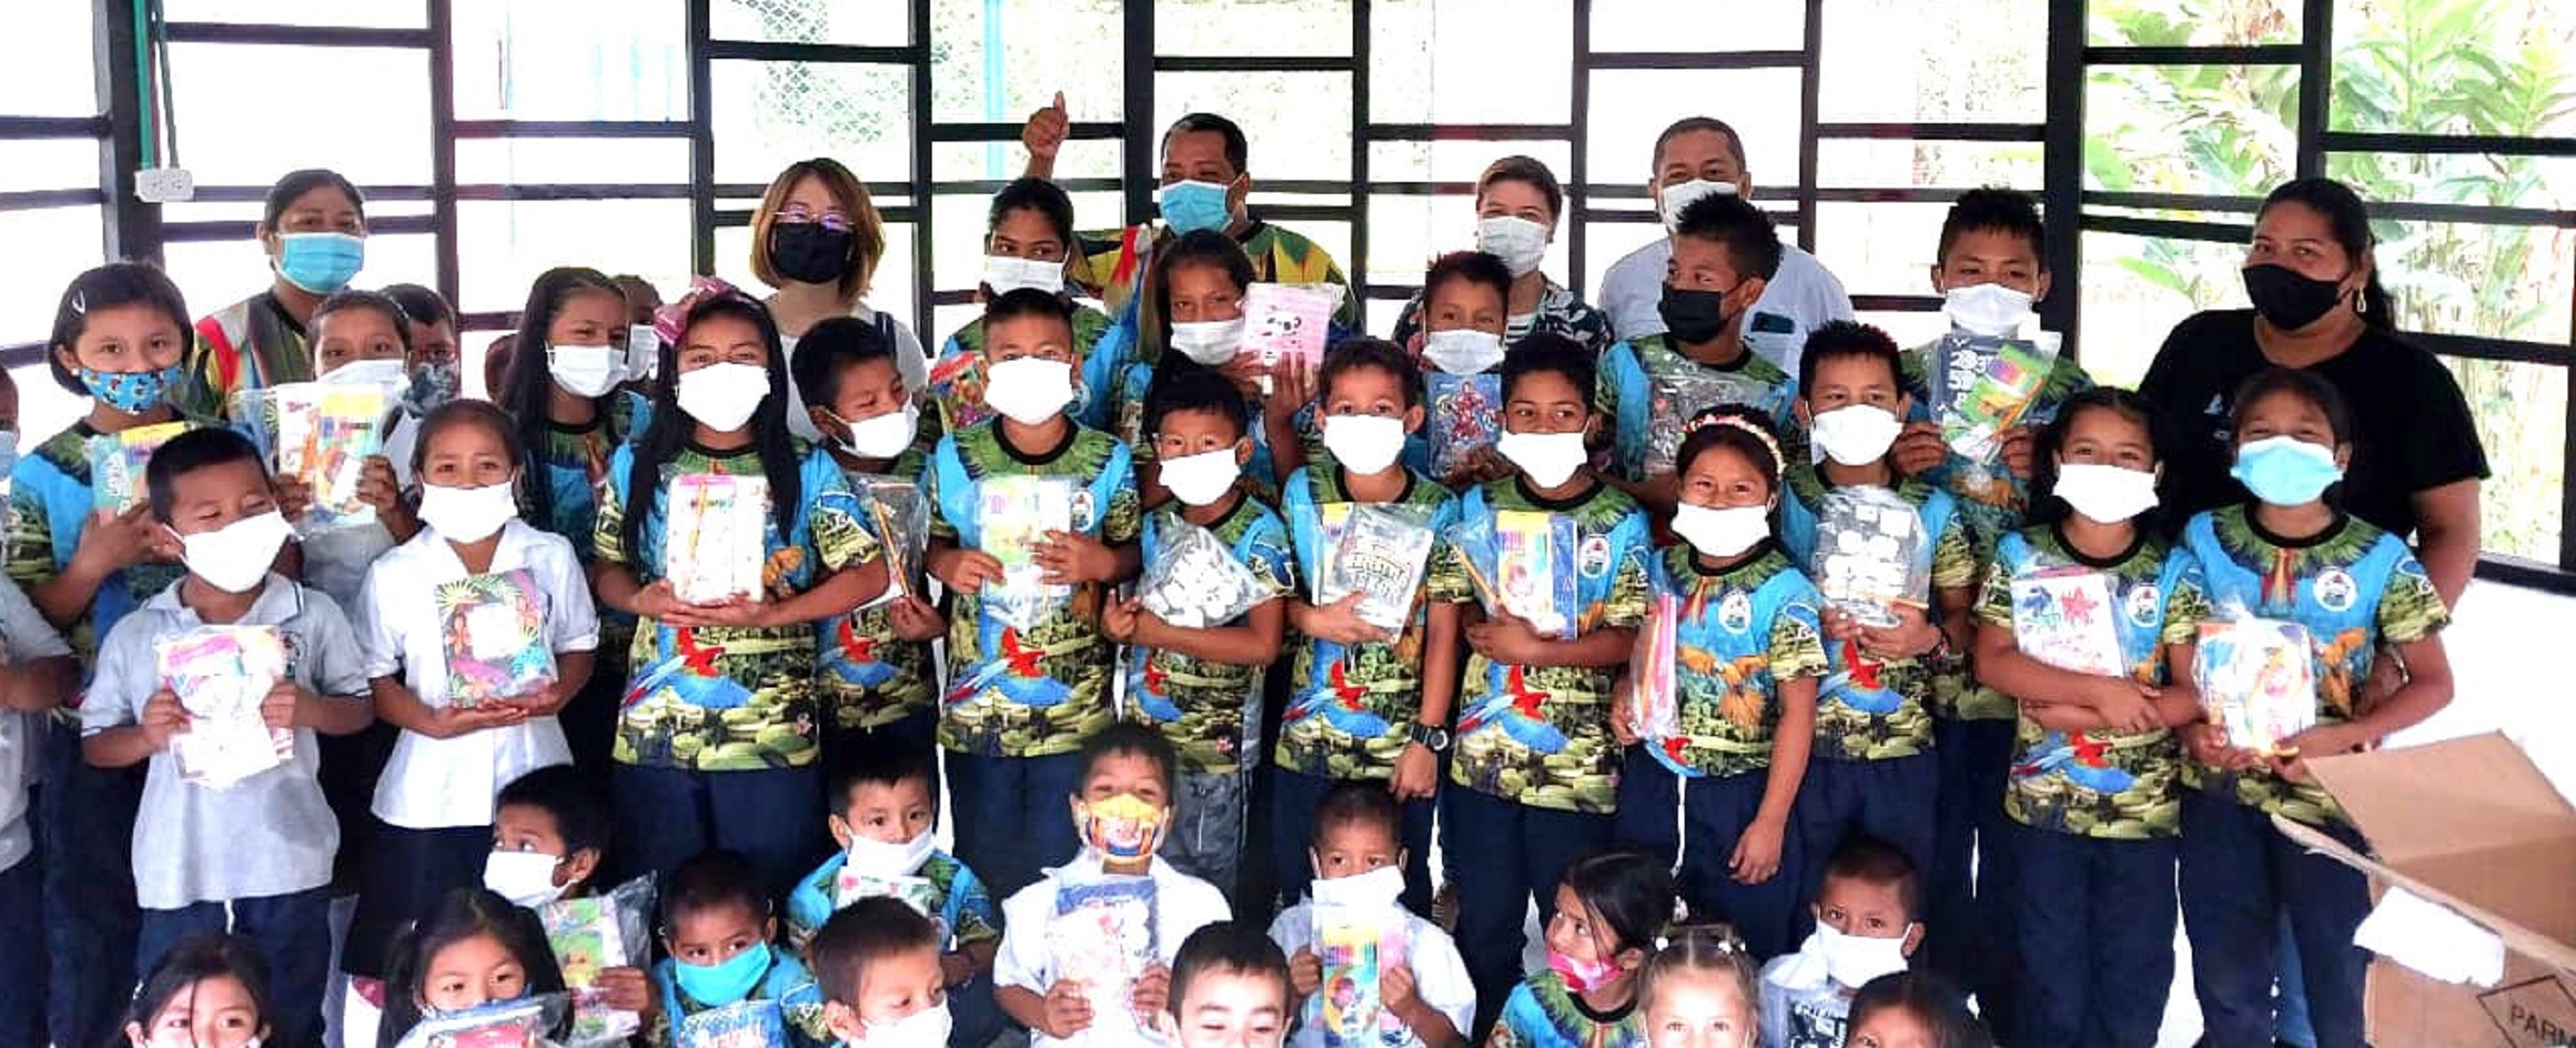 Niños del Amazonas beneficiarios con los kits escolares